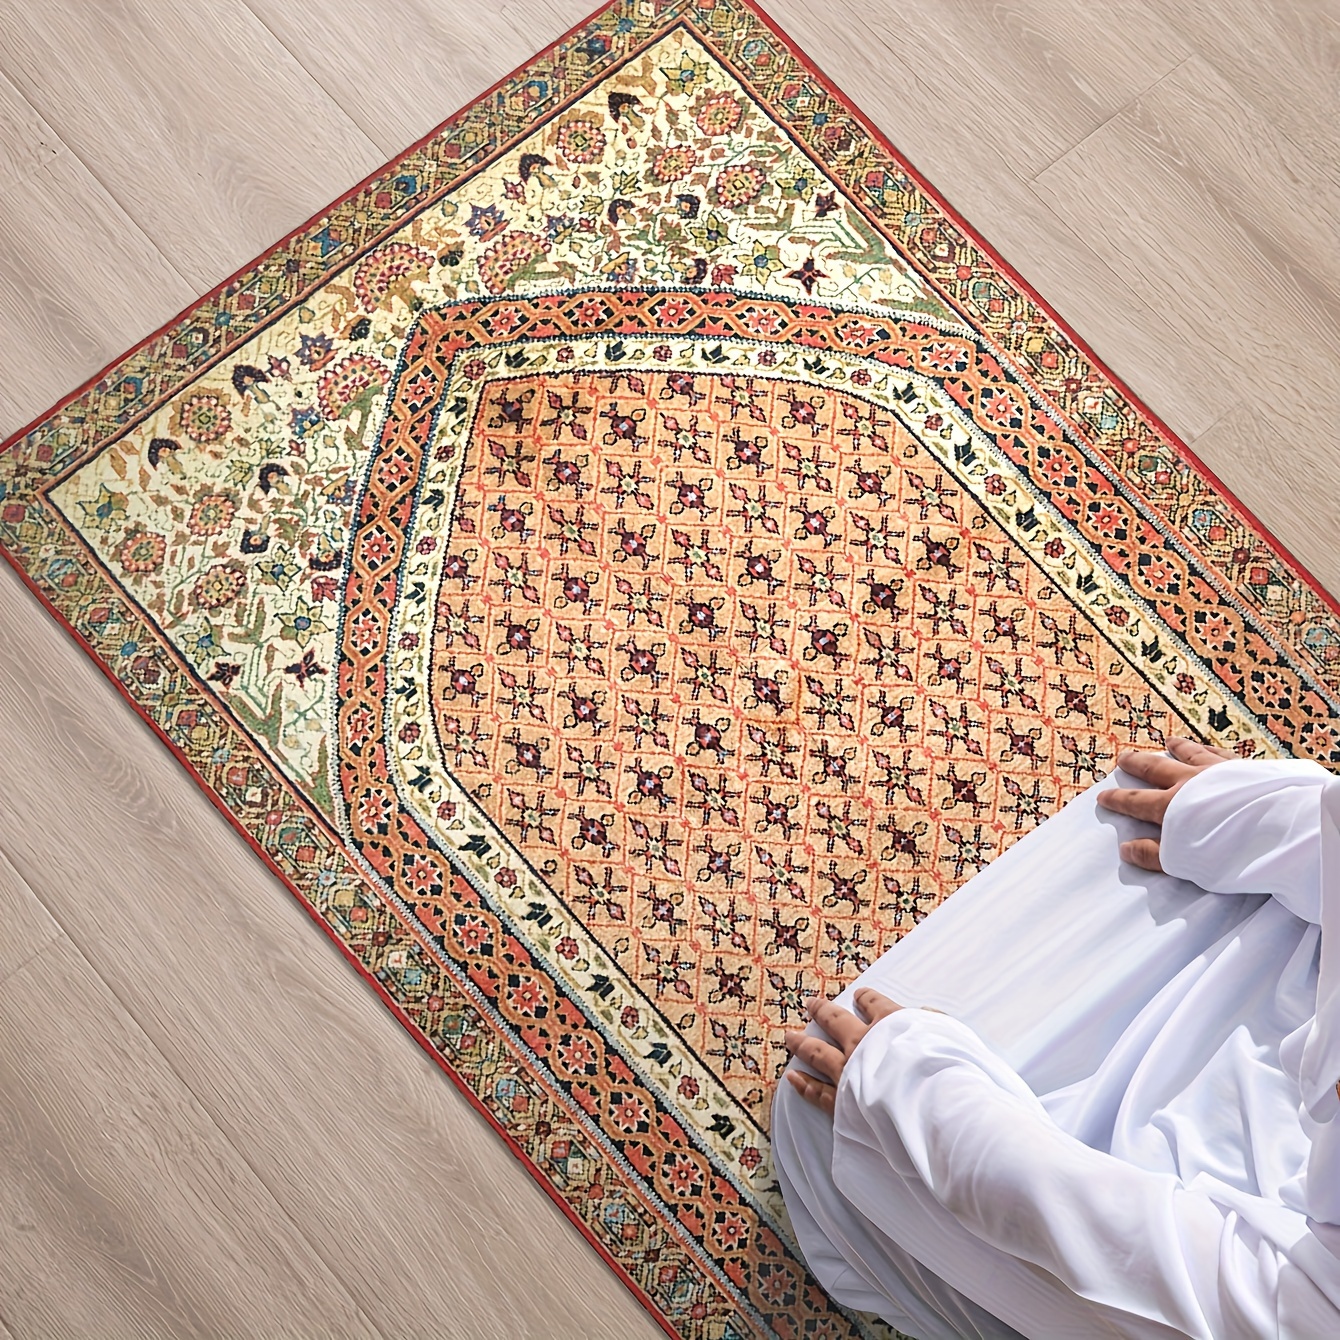 Tapis de prière musulmane en coton épais avec motifs imprimés, 80 x 120 cm  (rouge)